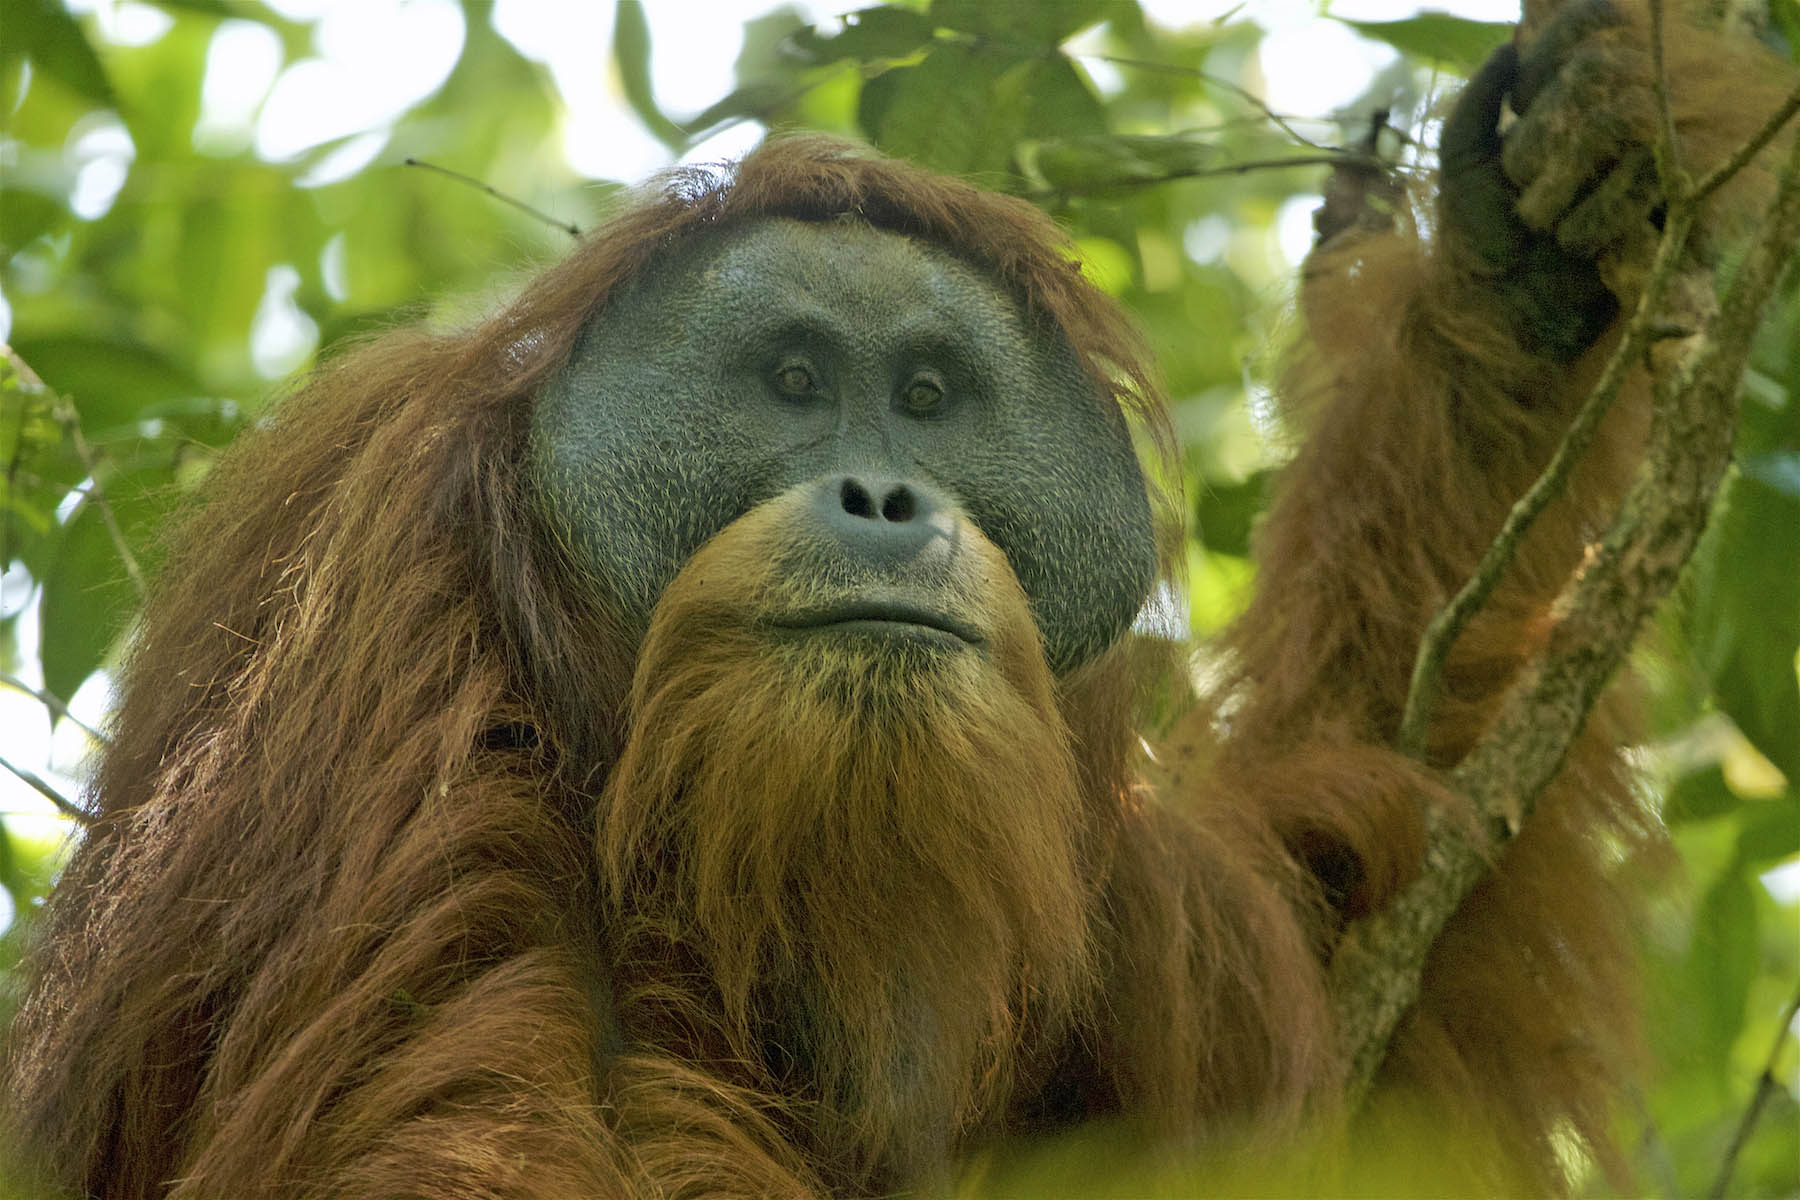 Meet the Tapanuli Orangutan